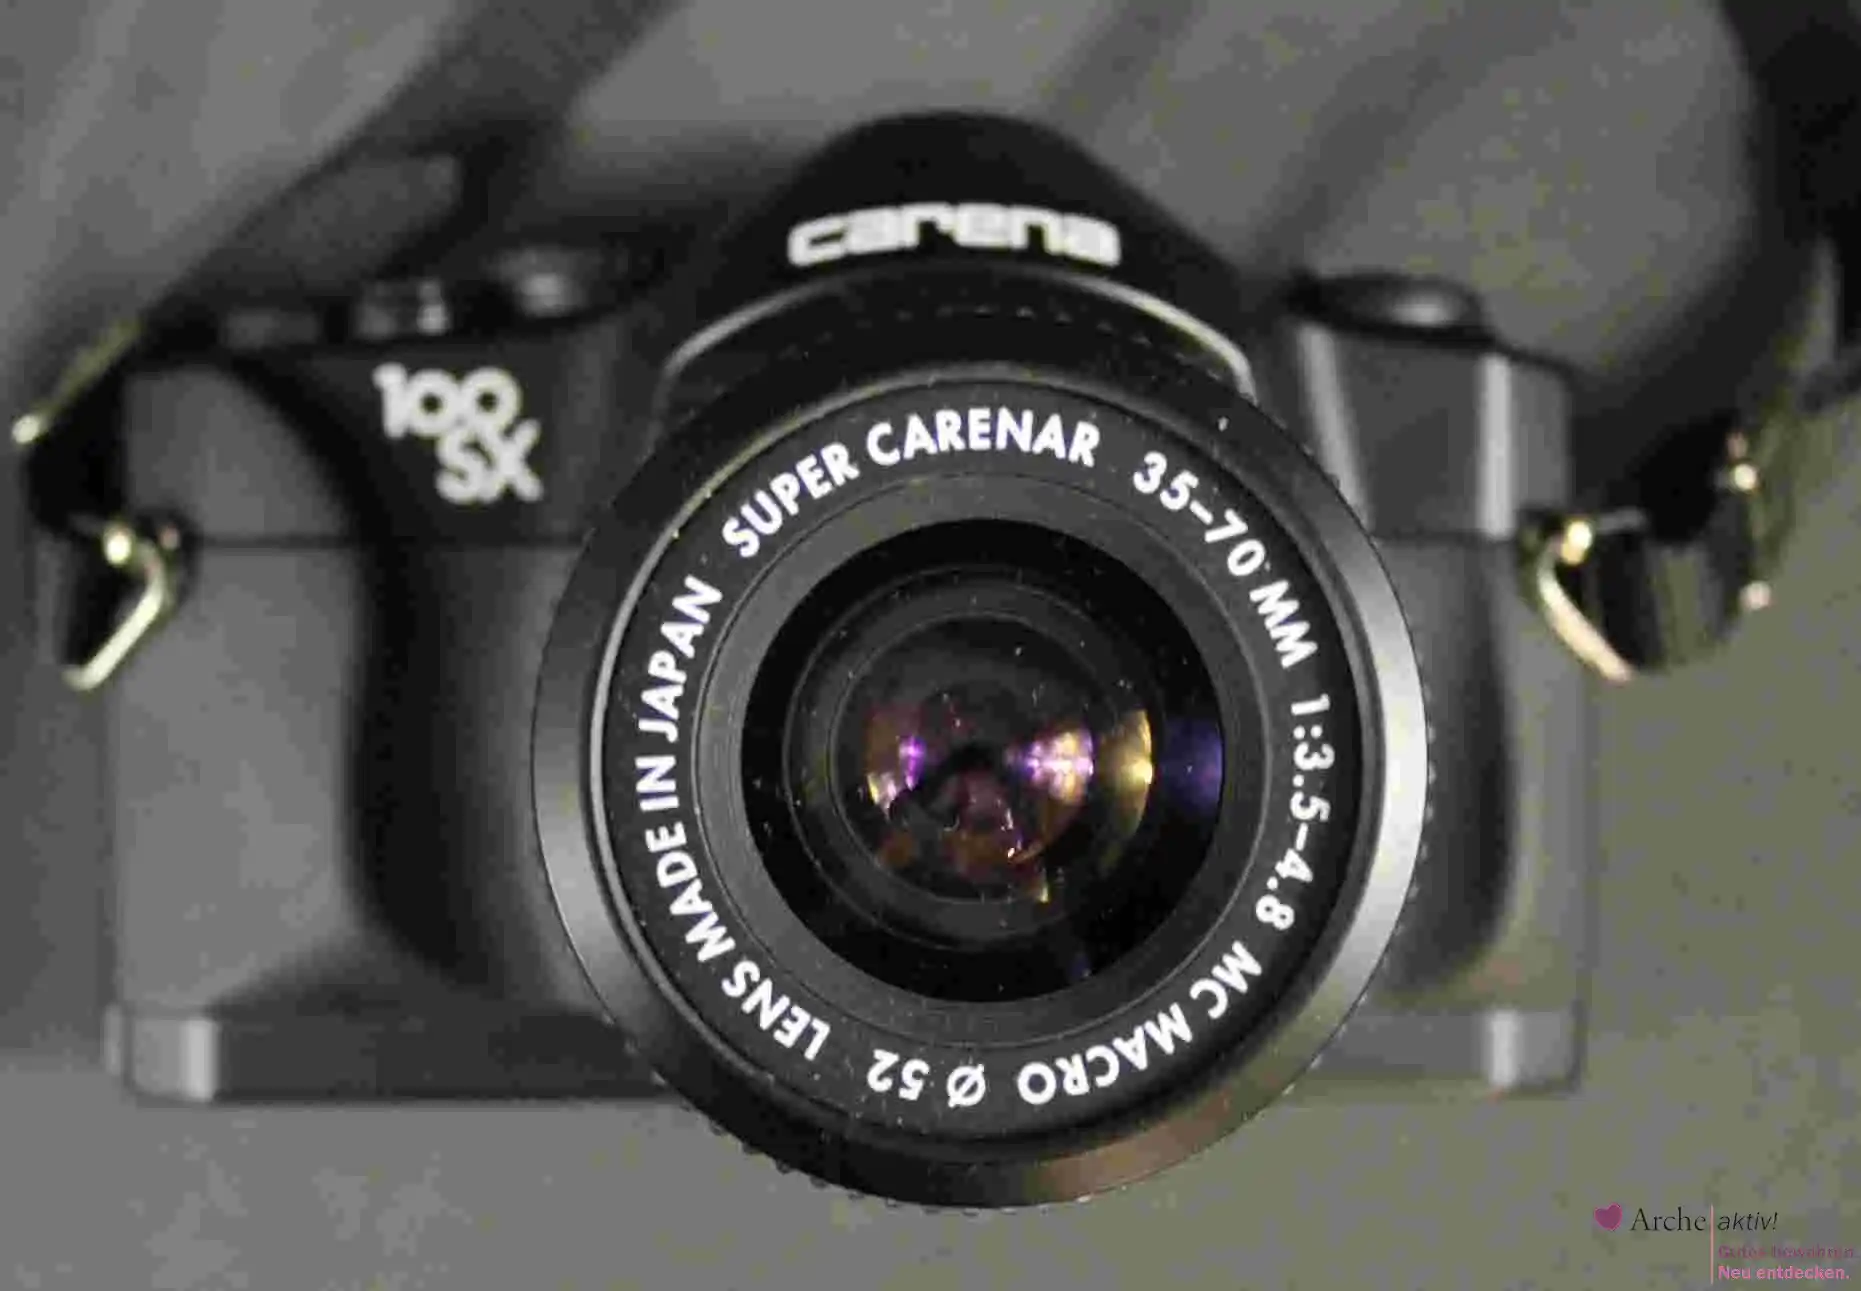 Carena 100 SX Kamera, Super Carernar 35-70 mm Objektiv, mit Blitz und Farbfiltern, gebraucht